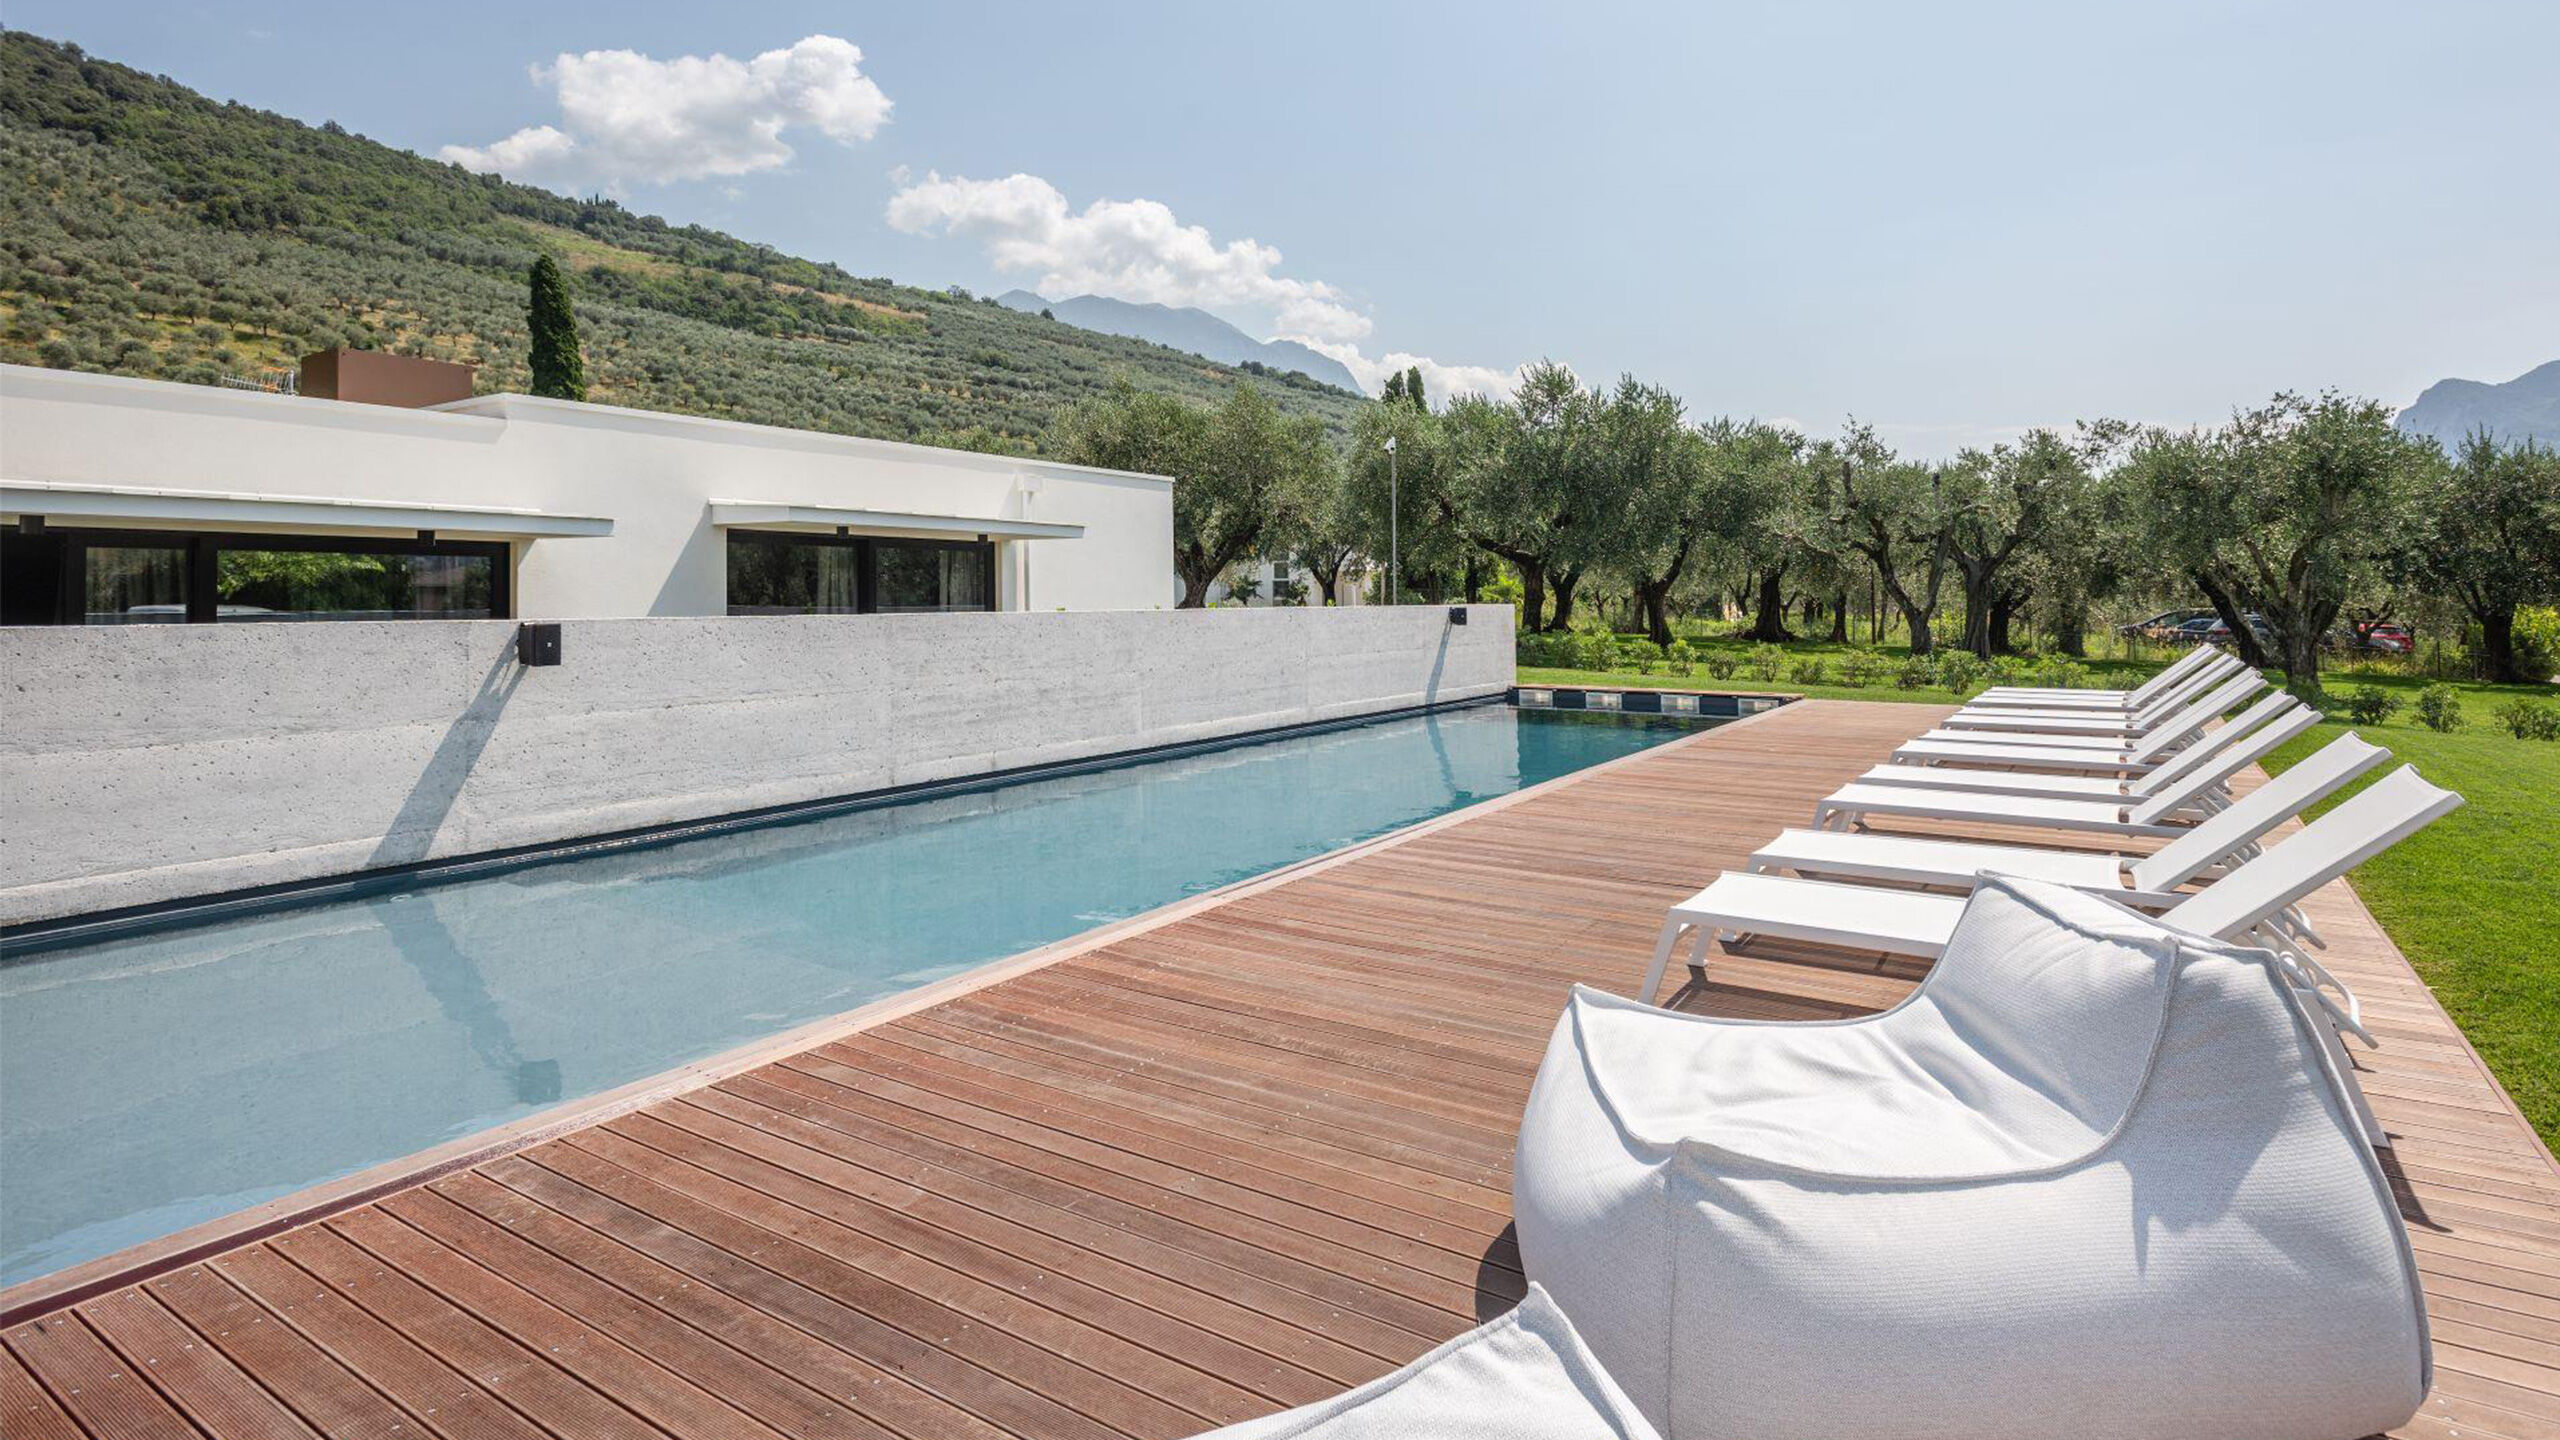 Oleeva Garda Living Suiten, Zimmer und Apartments, nur wenige Minuten vom See und Riva del Garda im Trentino entfernt Oleeva Garda Living | Relax